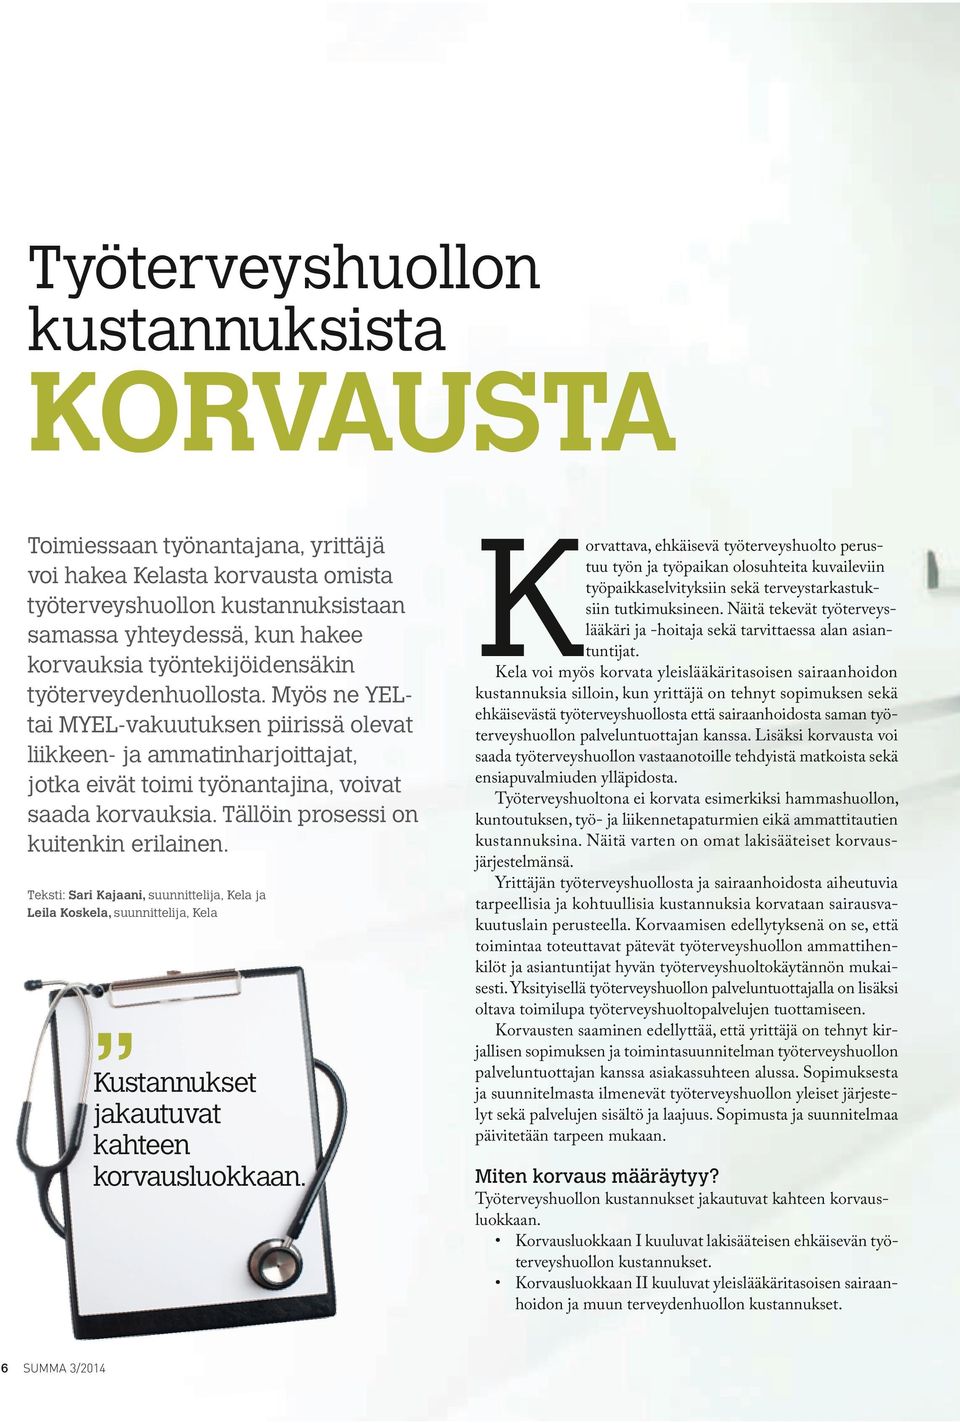 Tällöin prosessi on kuitenkin erilainen. Teksti: Sari Kajaani, suunnittelija, Kela ja Leila Koskela, suunnittelija, Kela Kustannukset jakautuvat kahteen korvausluokkaan.